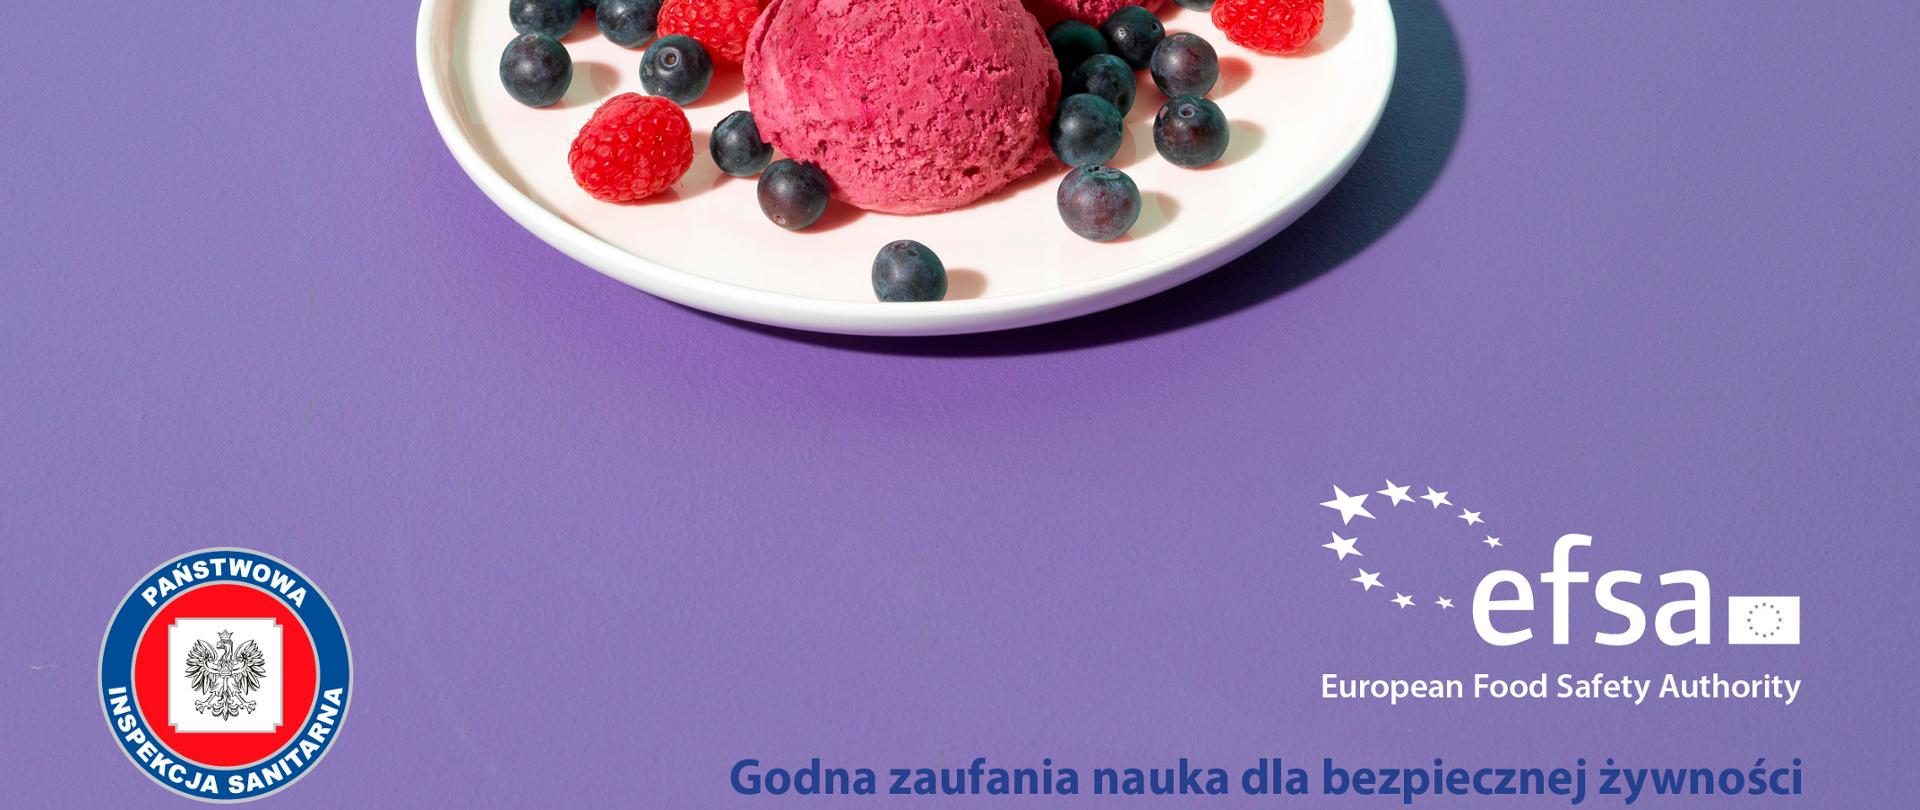 Zdjęcie przedstawia talerzyk a na nim lody w towarzystwie owoców i logo EFSA.
